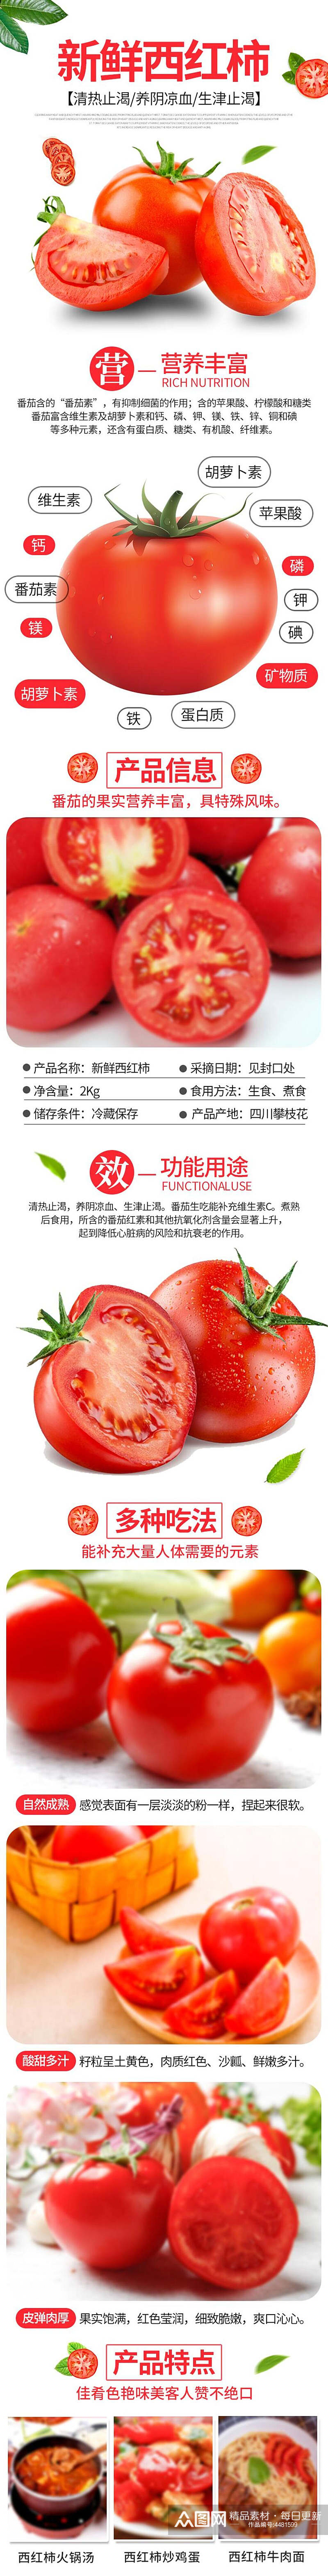 西红柿蔬菜电商详情页素材